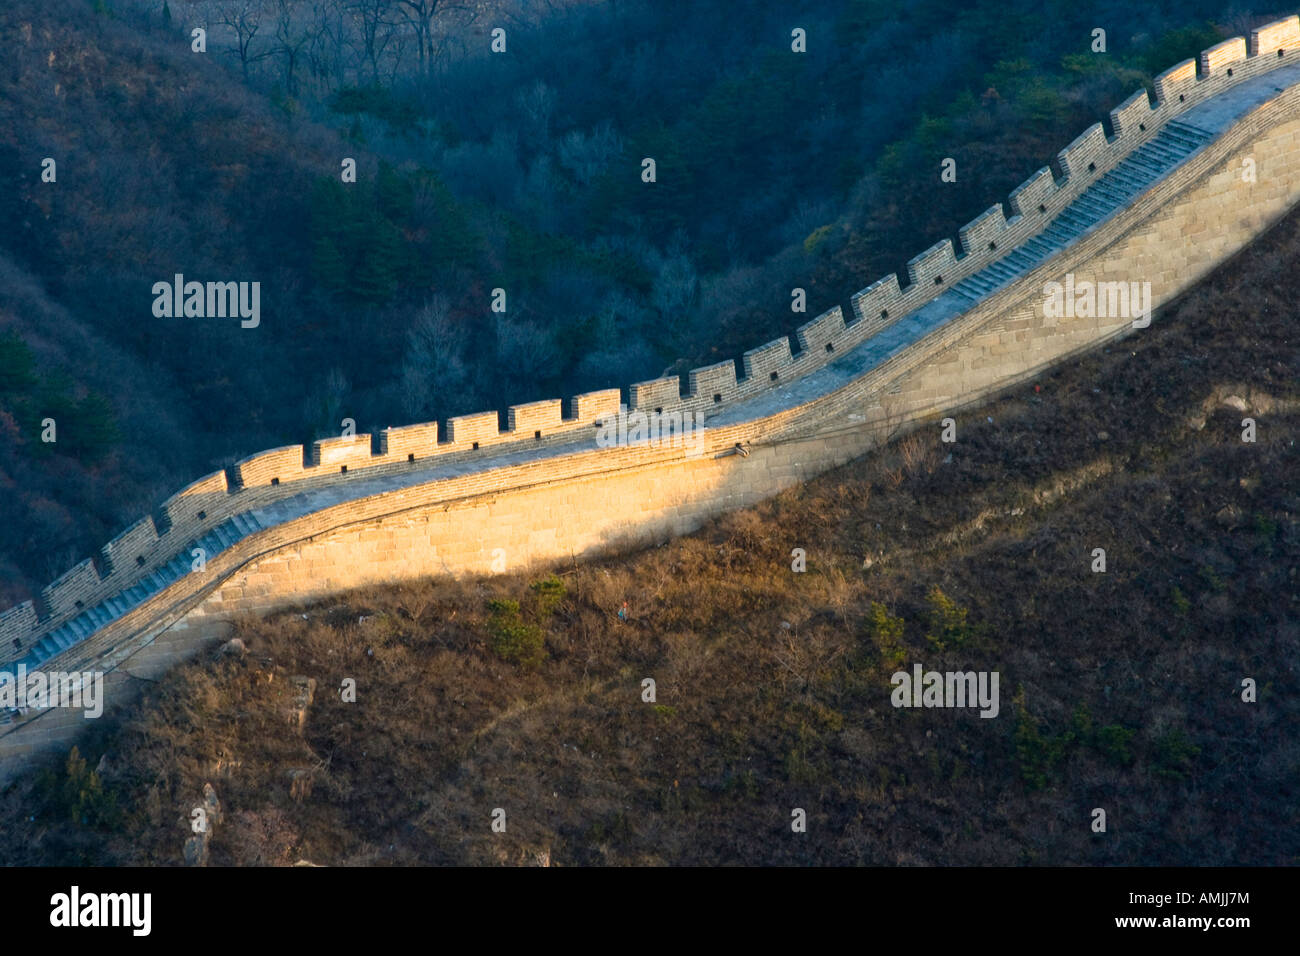 Die chinesische Mauer bei Badaling Beijing China Stockfoto